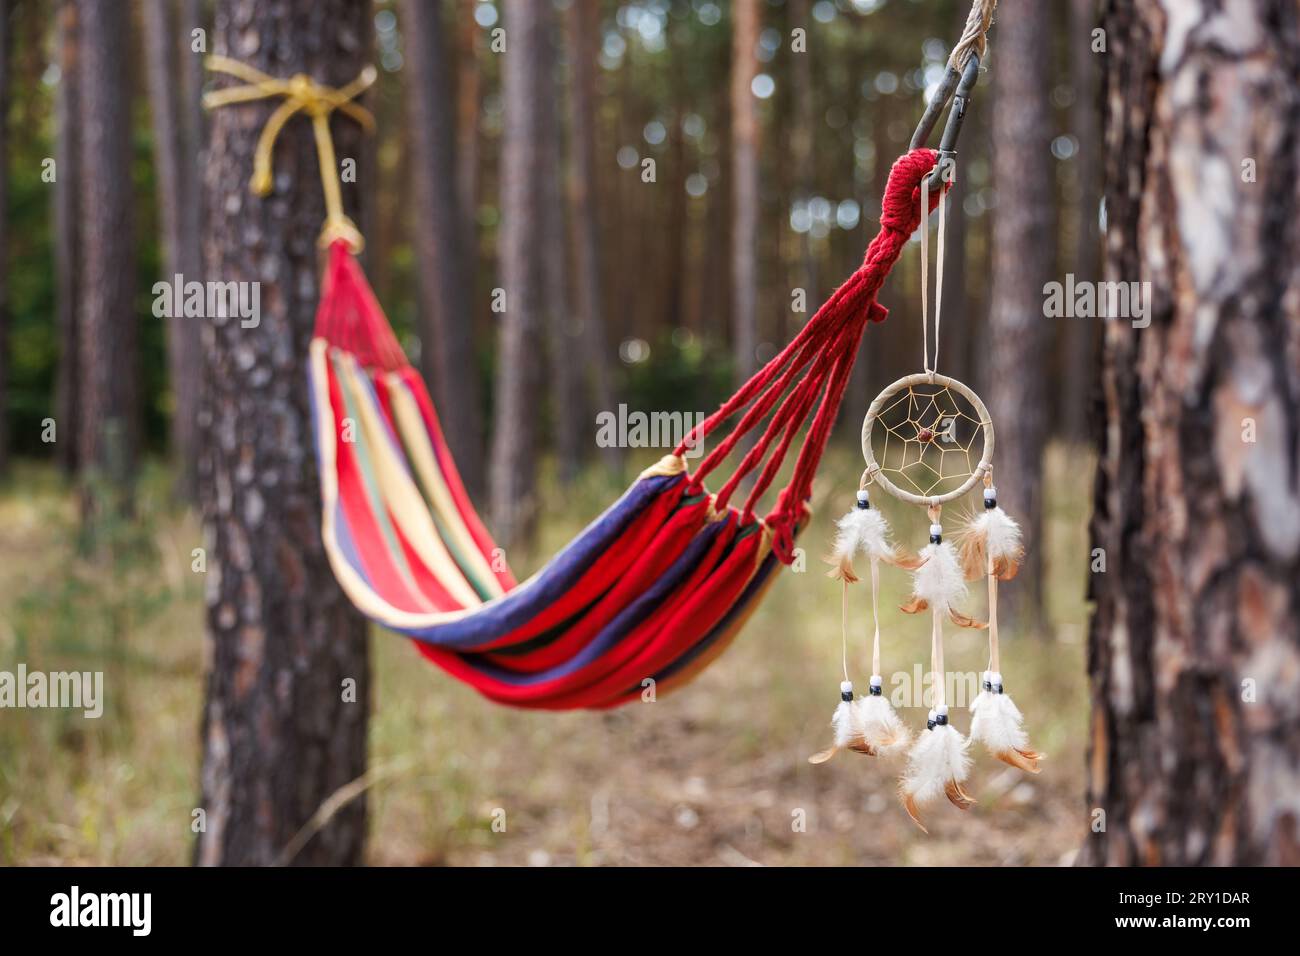 Hamac et dreamcatcher suspendus entre les arbres dans la forêt Banque D'Images